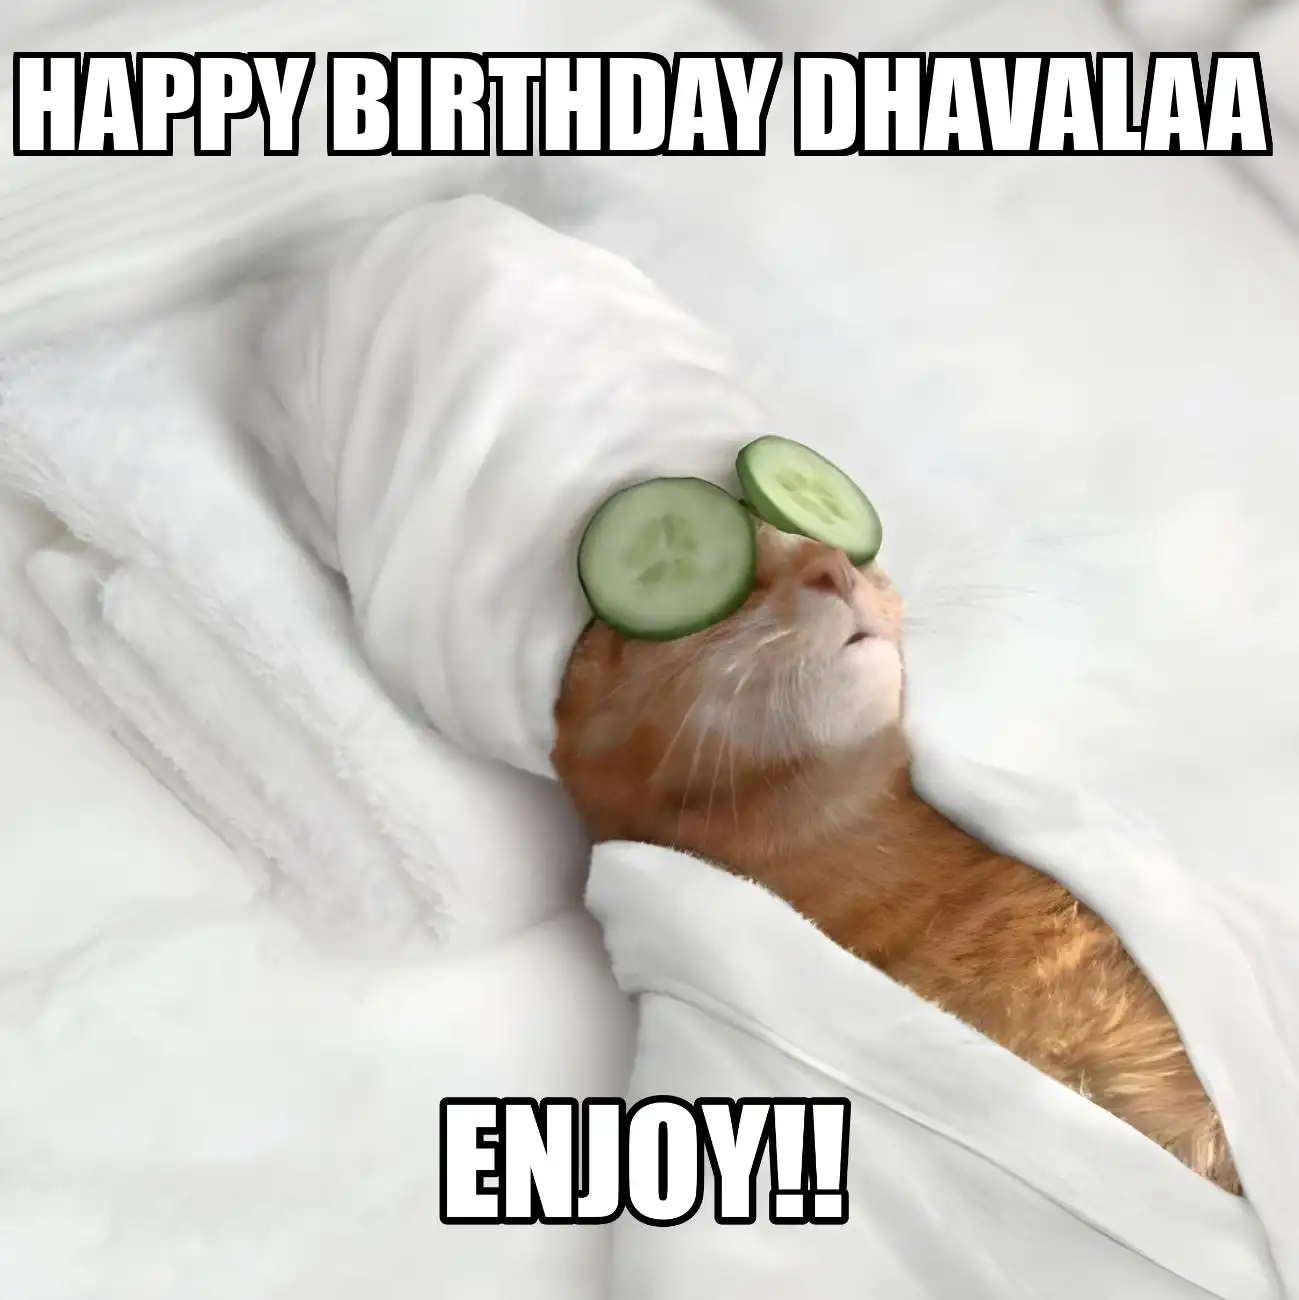 Happy Birthday Dhavalaa Enjoy Cat Meme